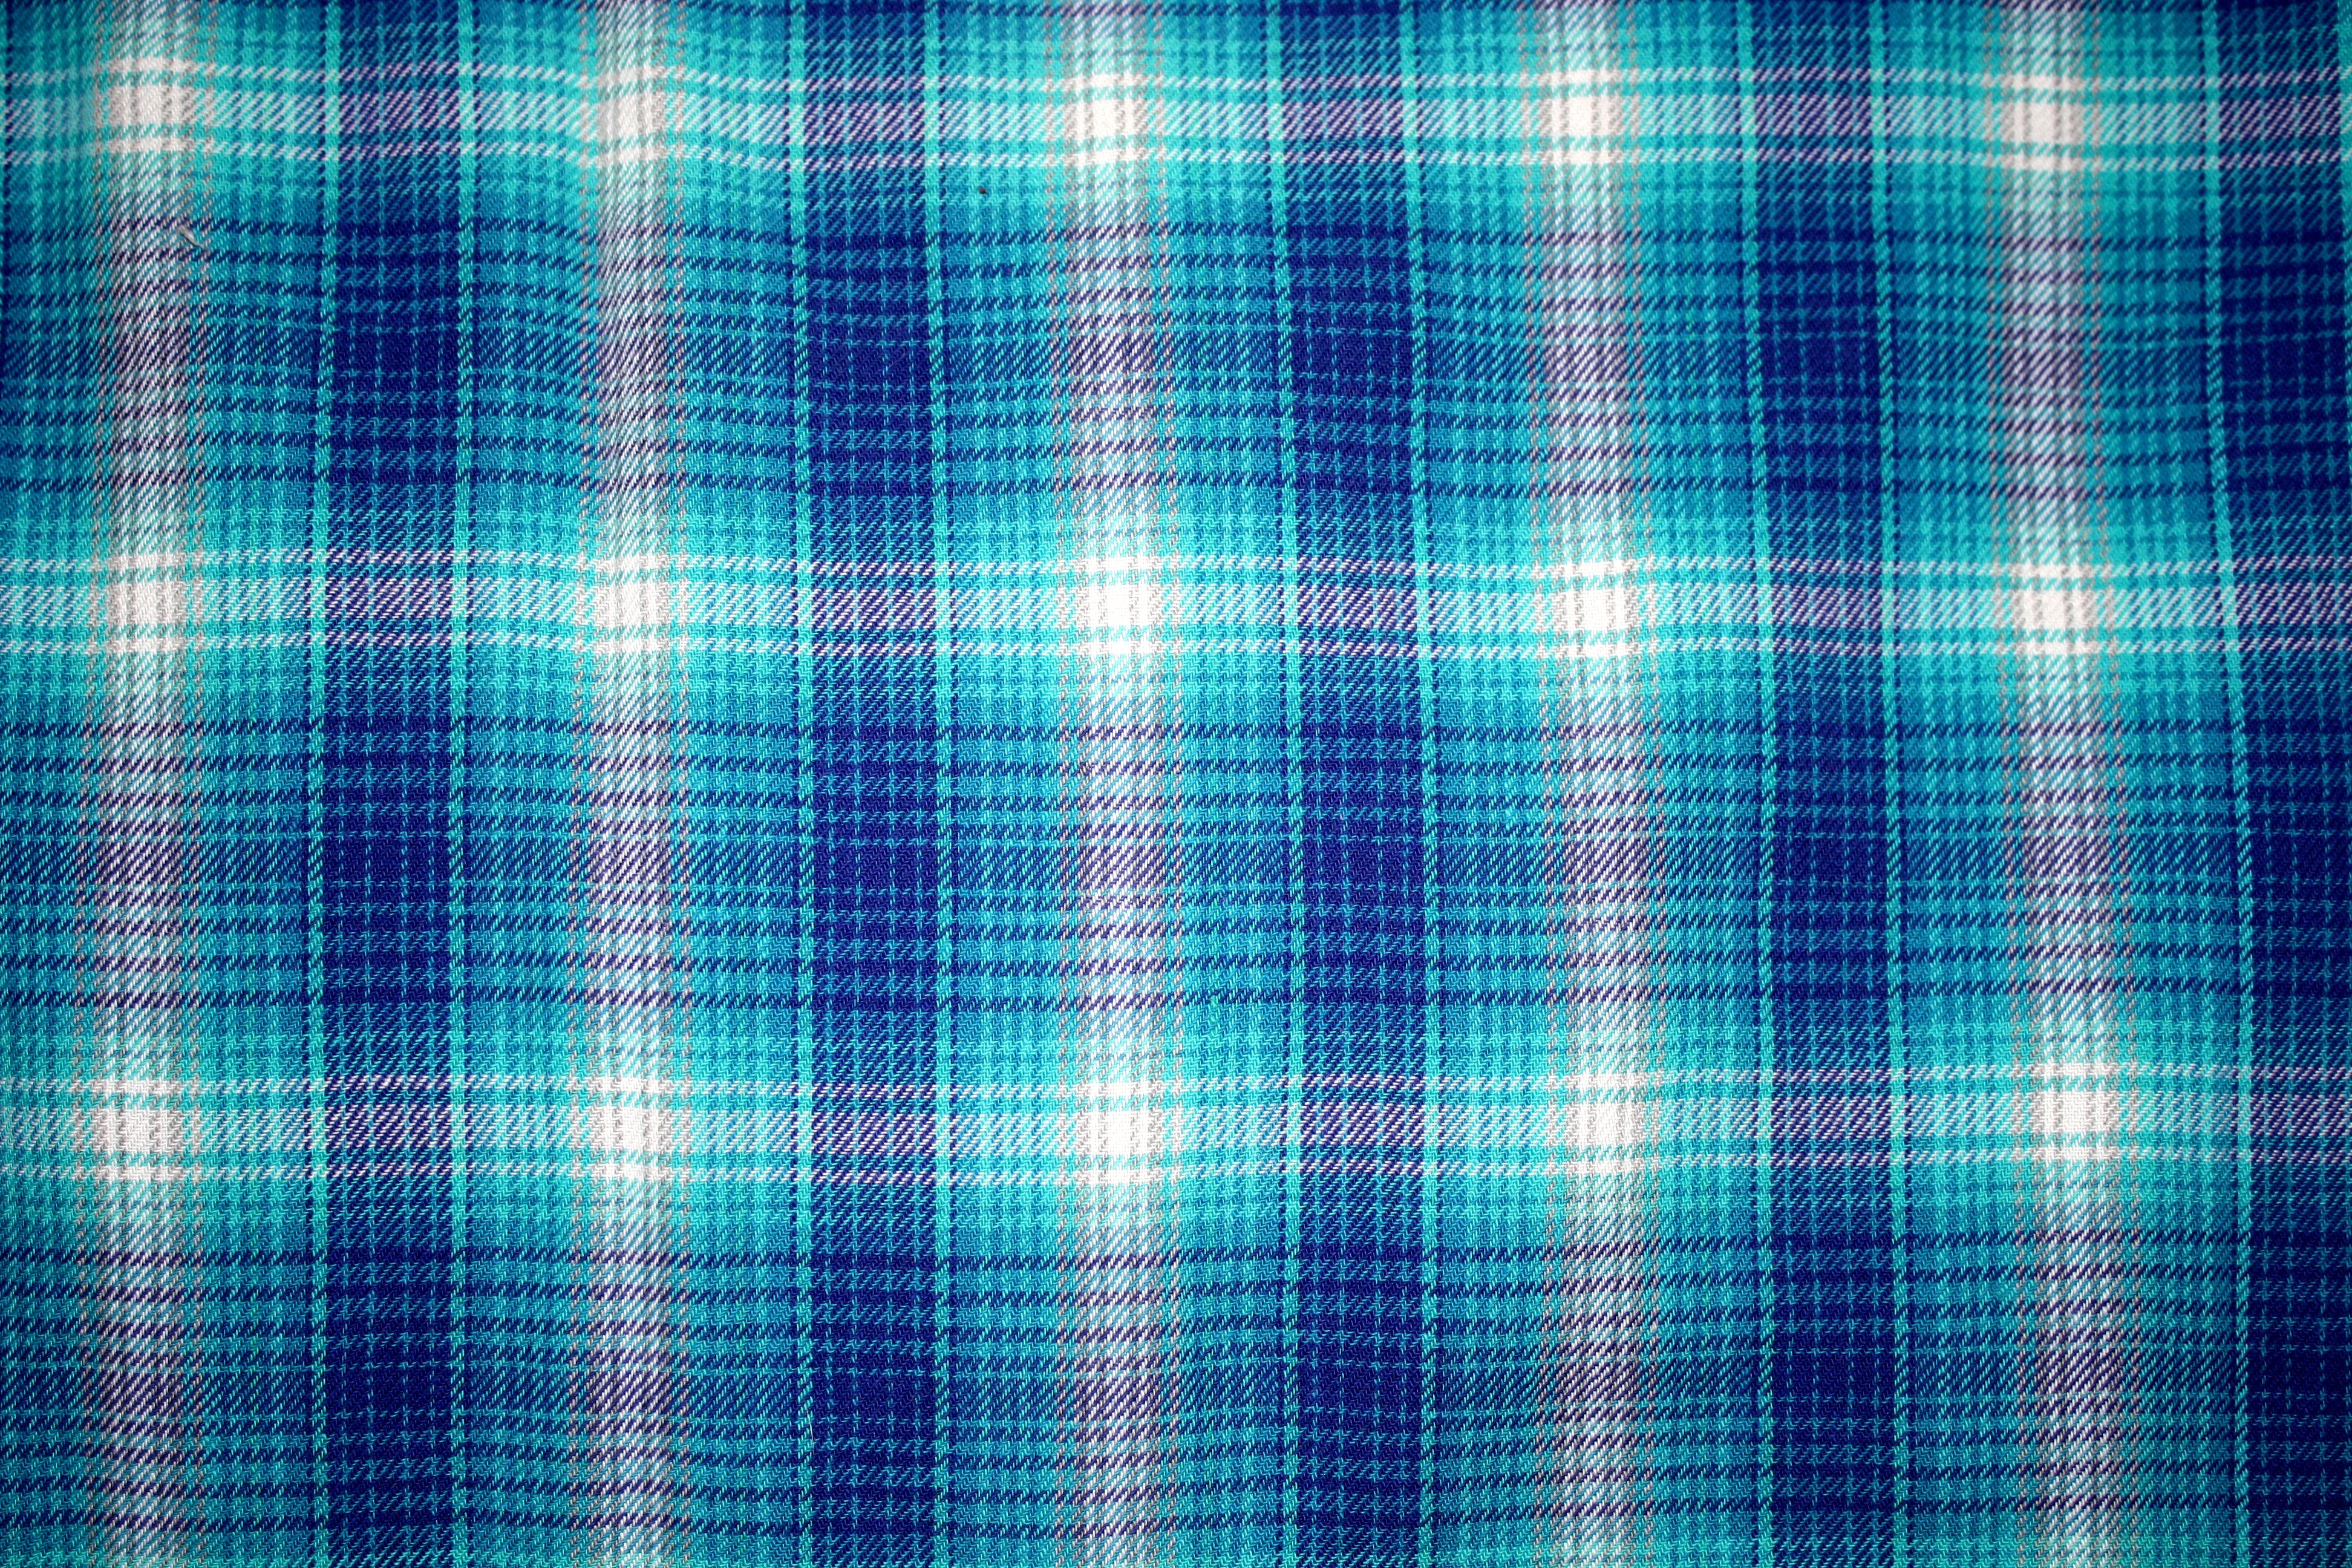 Blue Plaid Fabric Texture Picture Photograph Photos Public